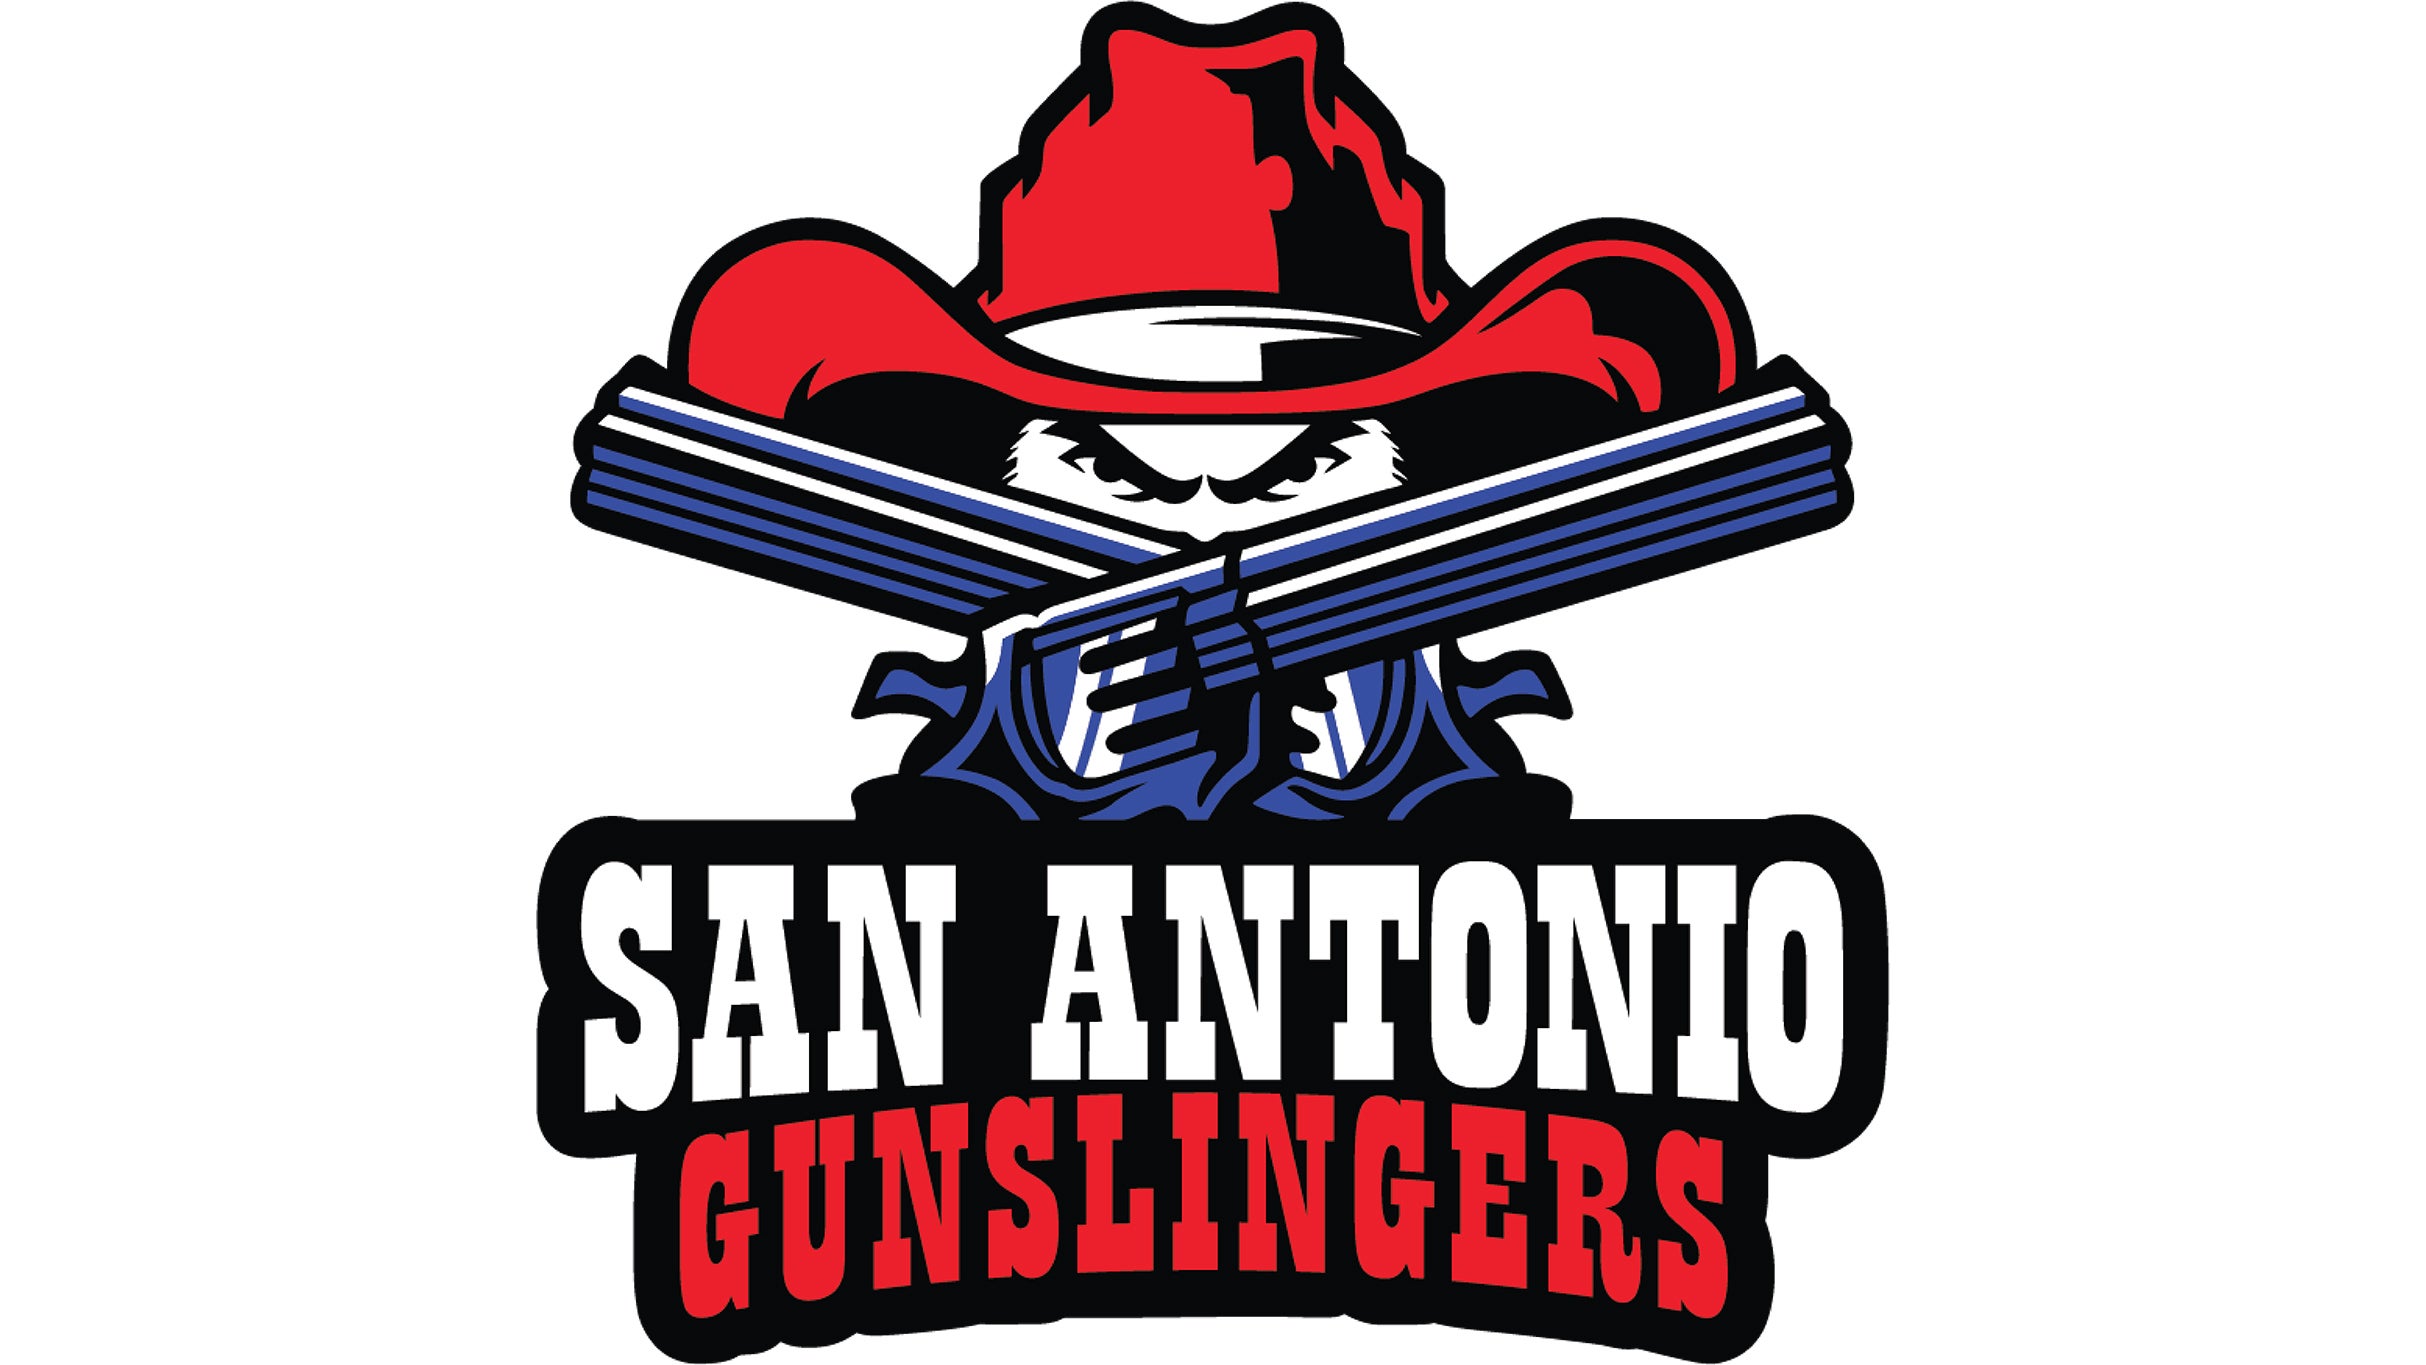 San Antonio Gunslingers vs. Northern Arizona Wranglers